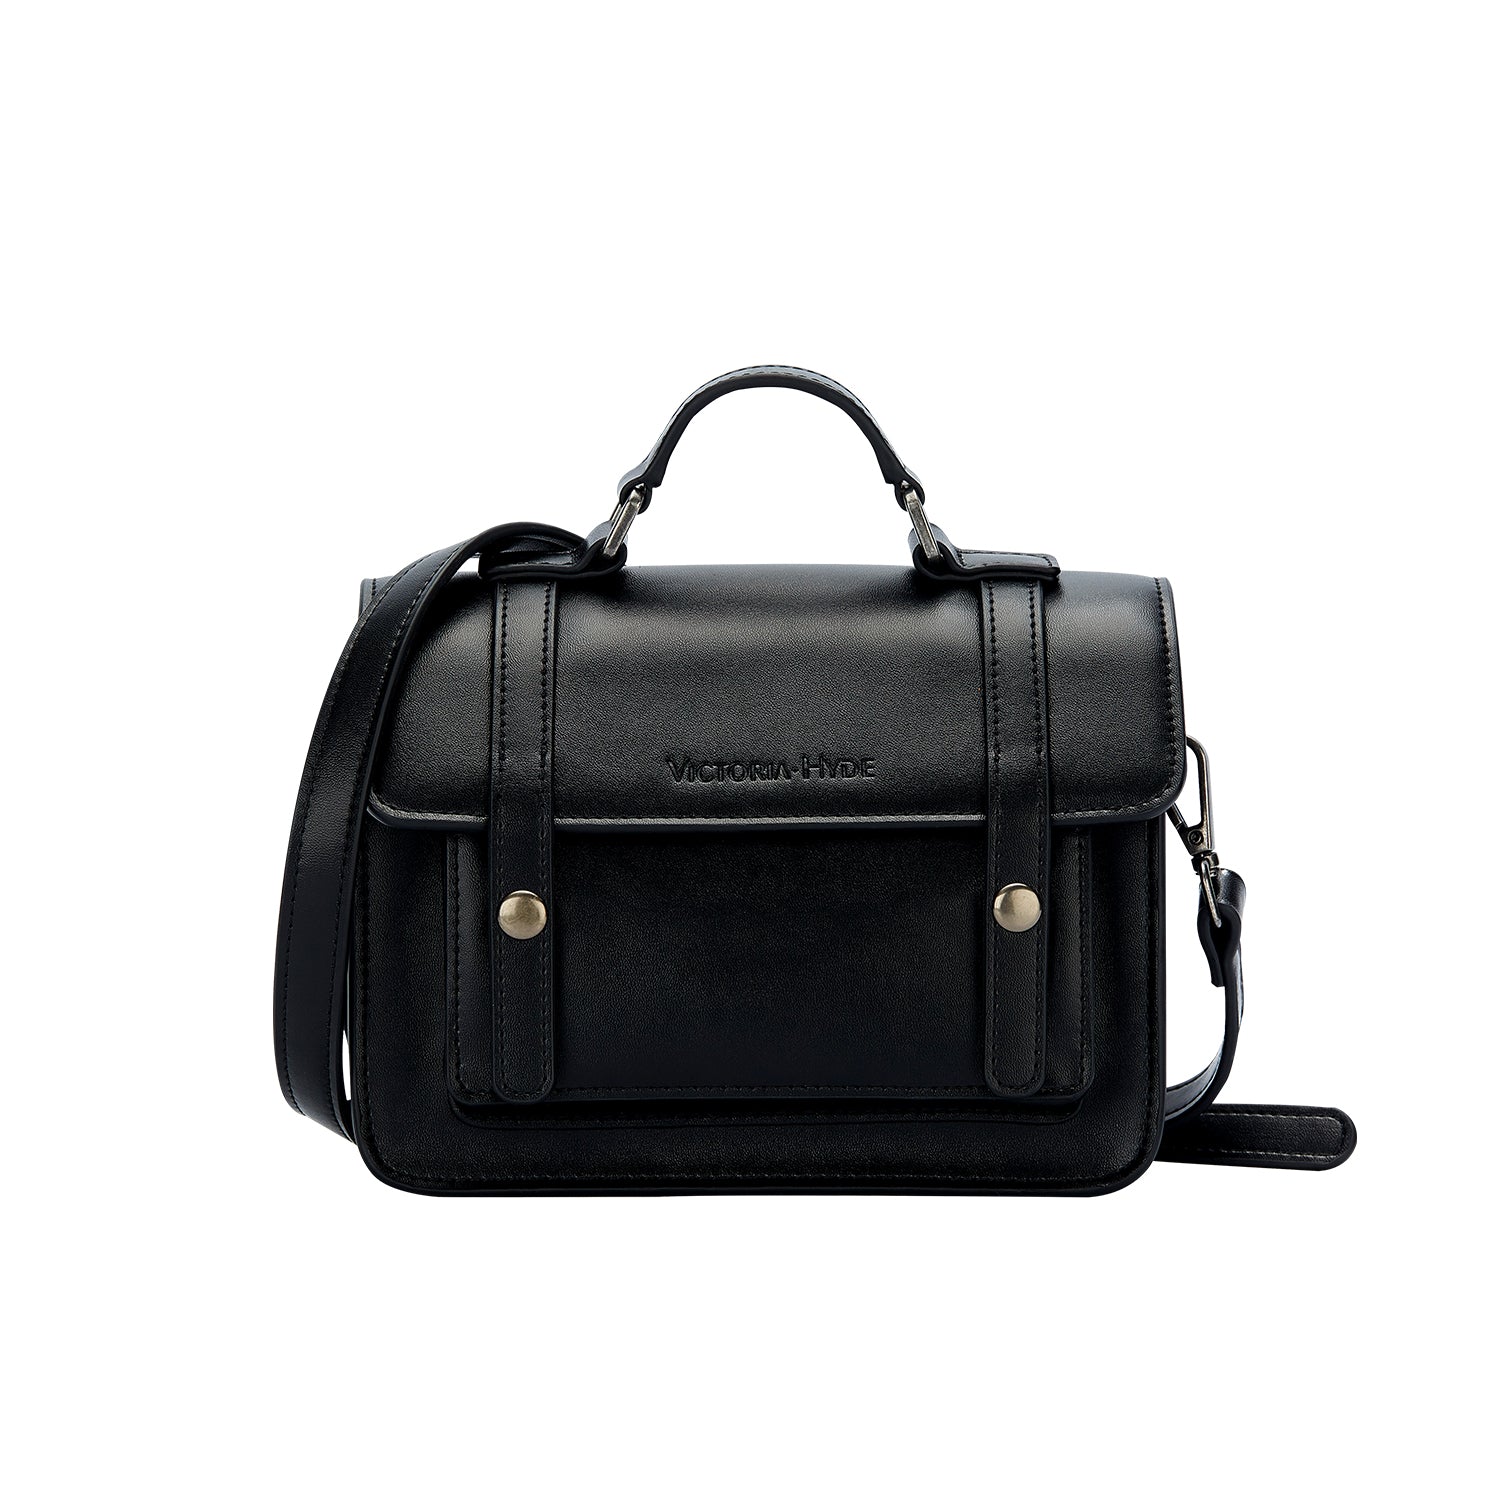 Handtasche Satchel Bag Antique in Black